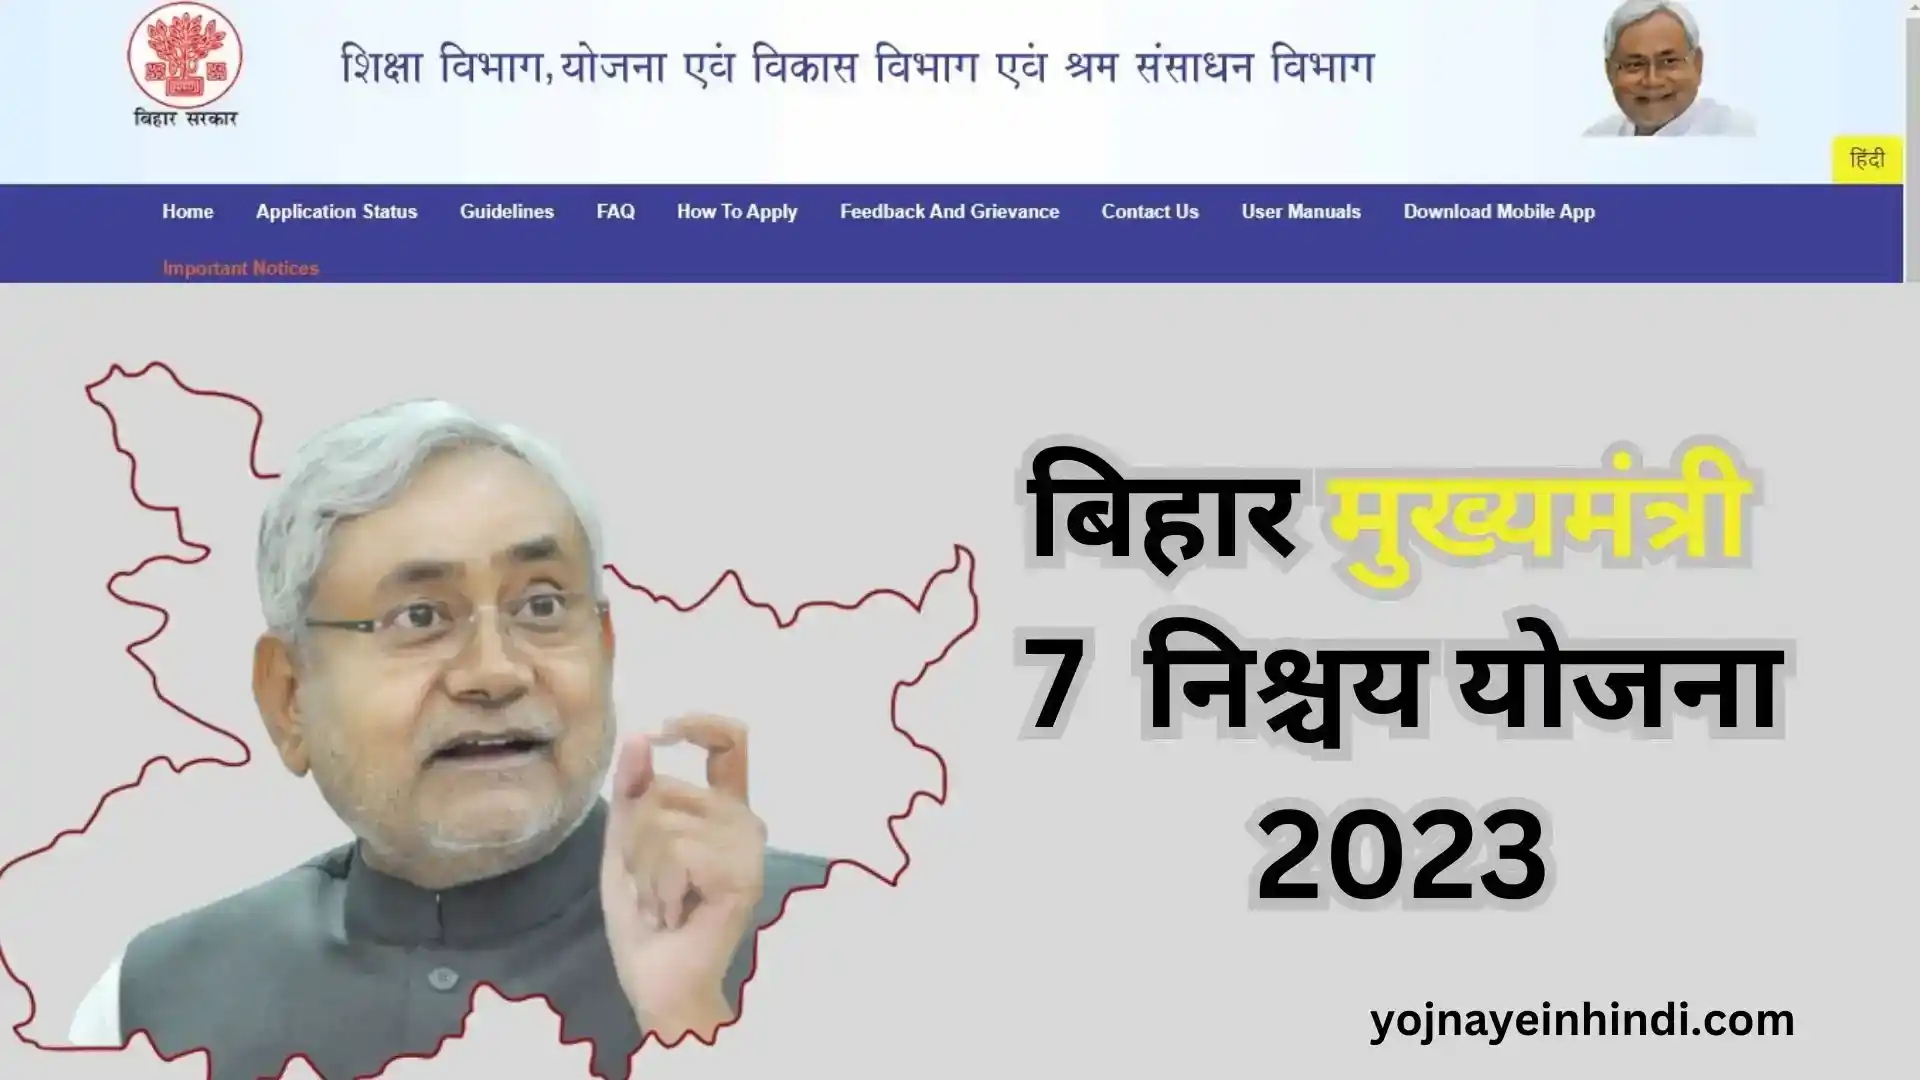 Mukhyamantri Saat Nischay Yojna 2023 | बिहार मुख्यमंत्री सात निश्चय योजना